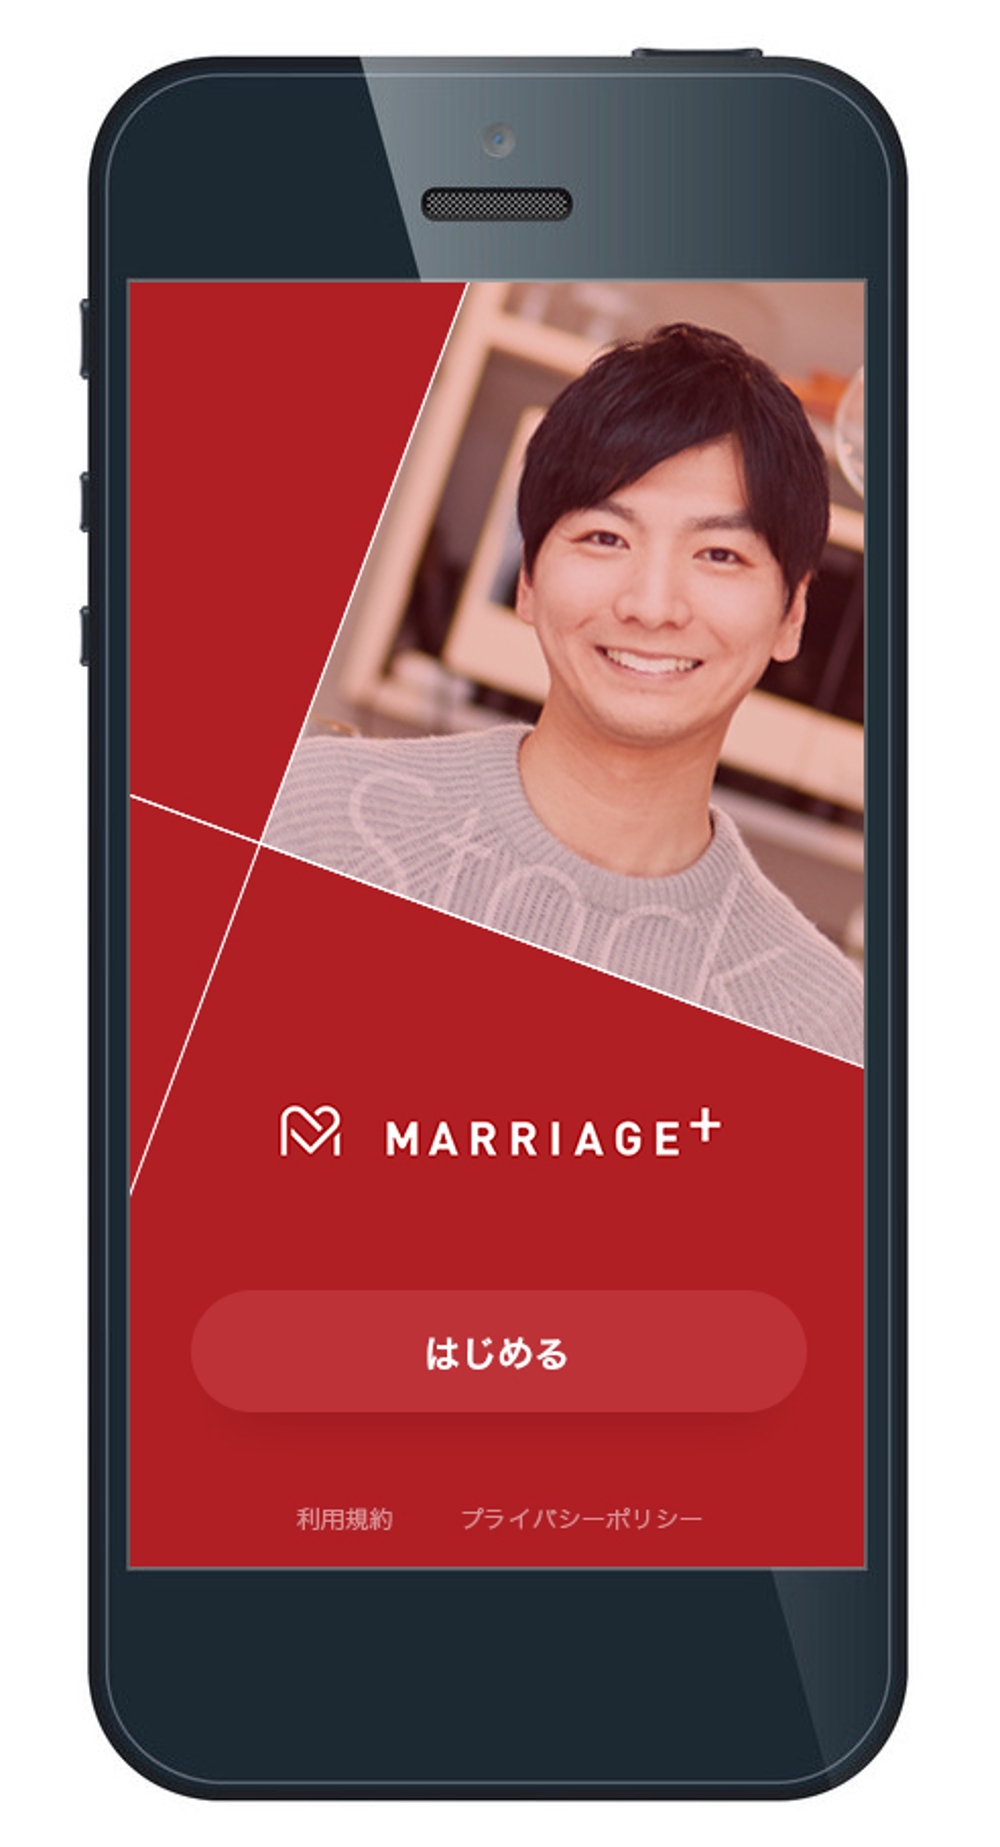 結婚マッチングサイトのスマホ画面のデザイン